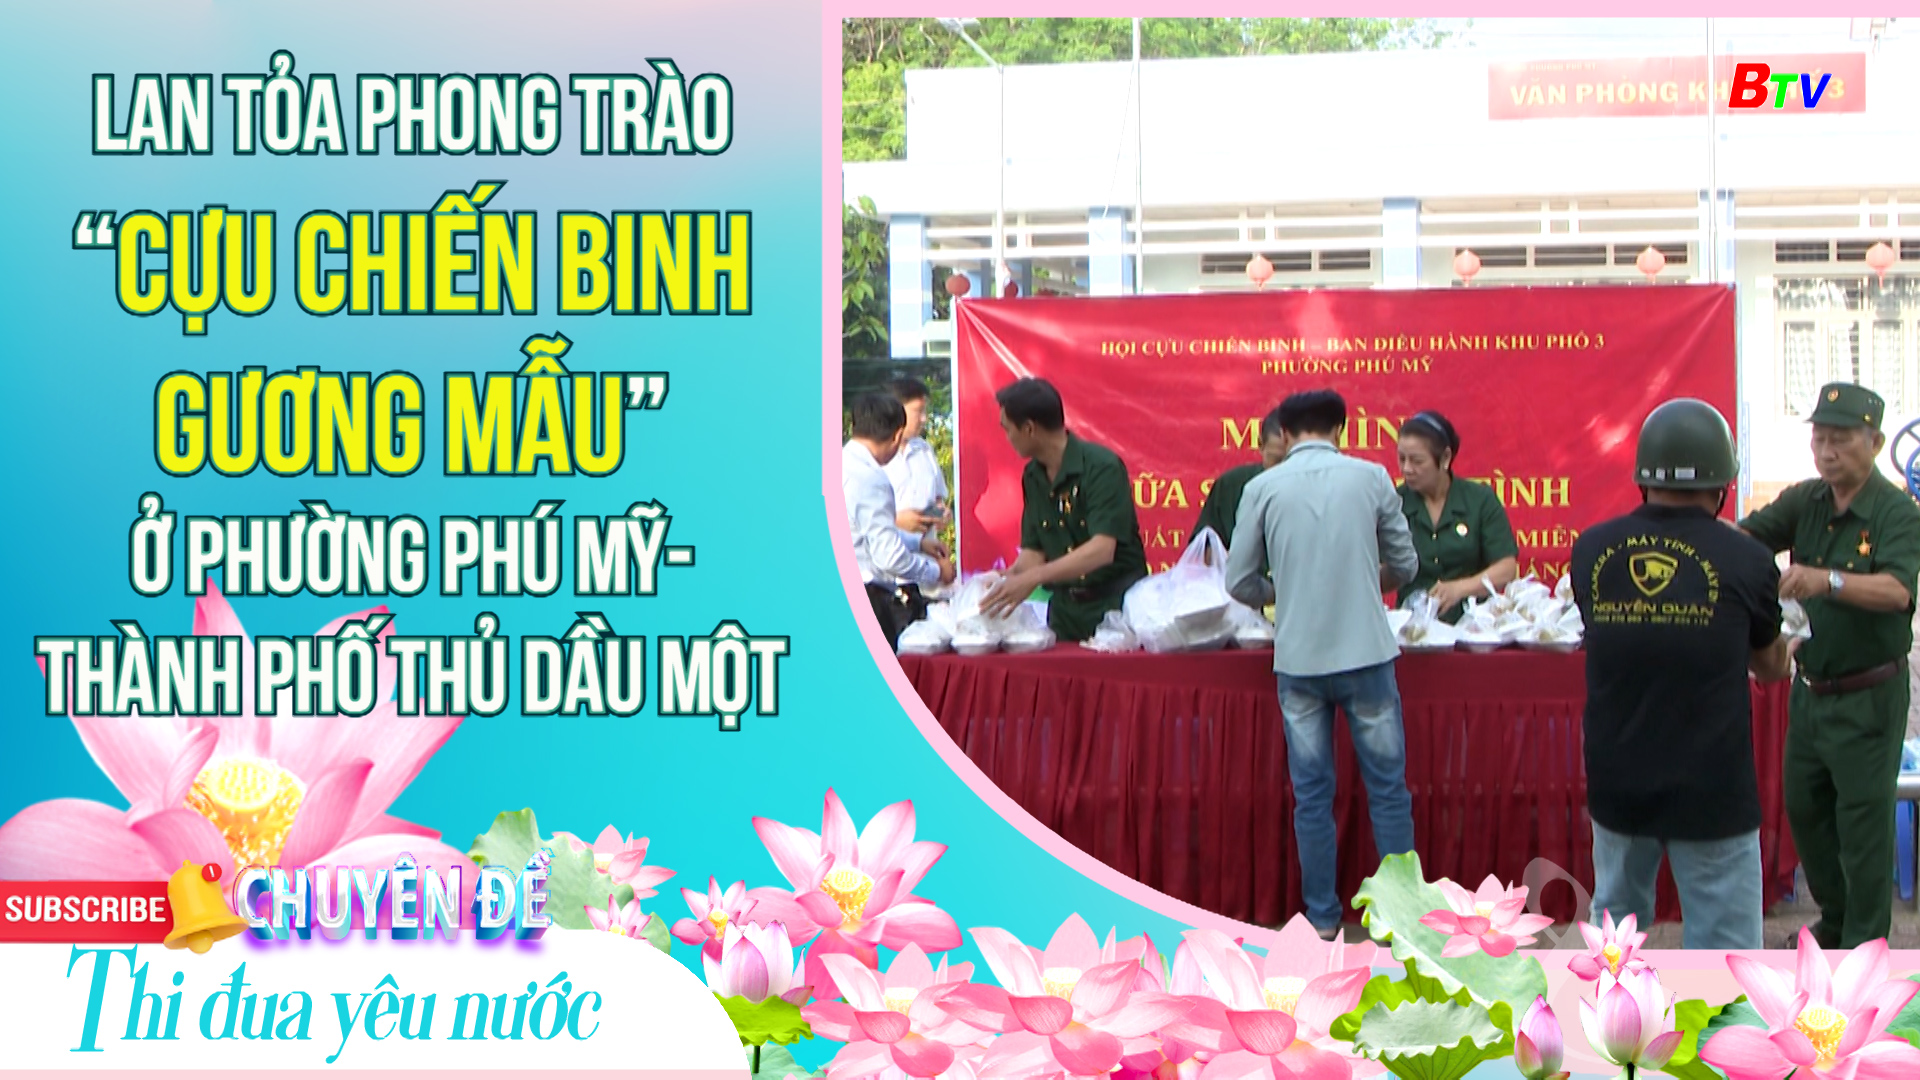 Lan tỏa phong trào “Cựu chiến binh gương mẫu” ở phường Phú Mỹ- thành phố Thủ Dầu Một